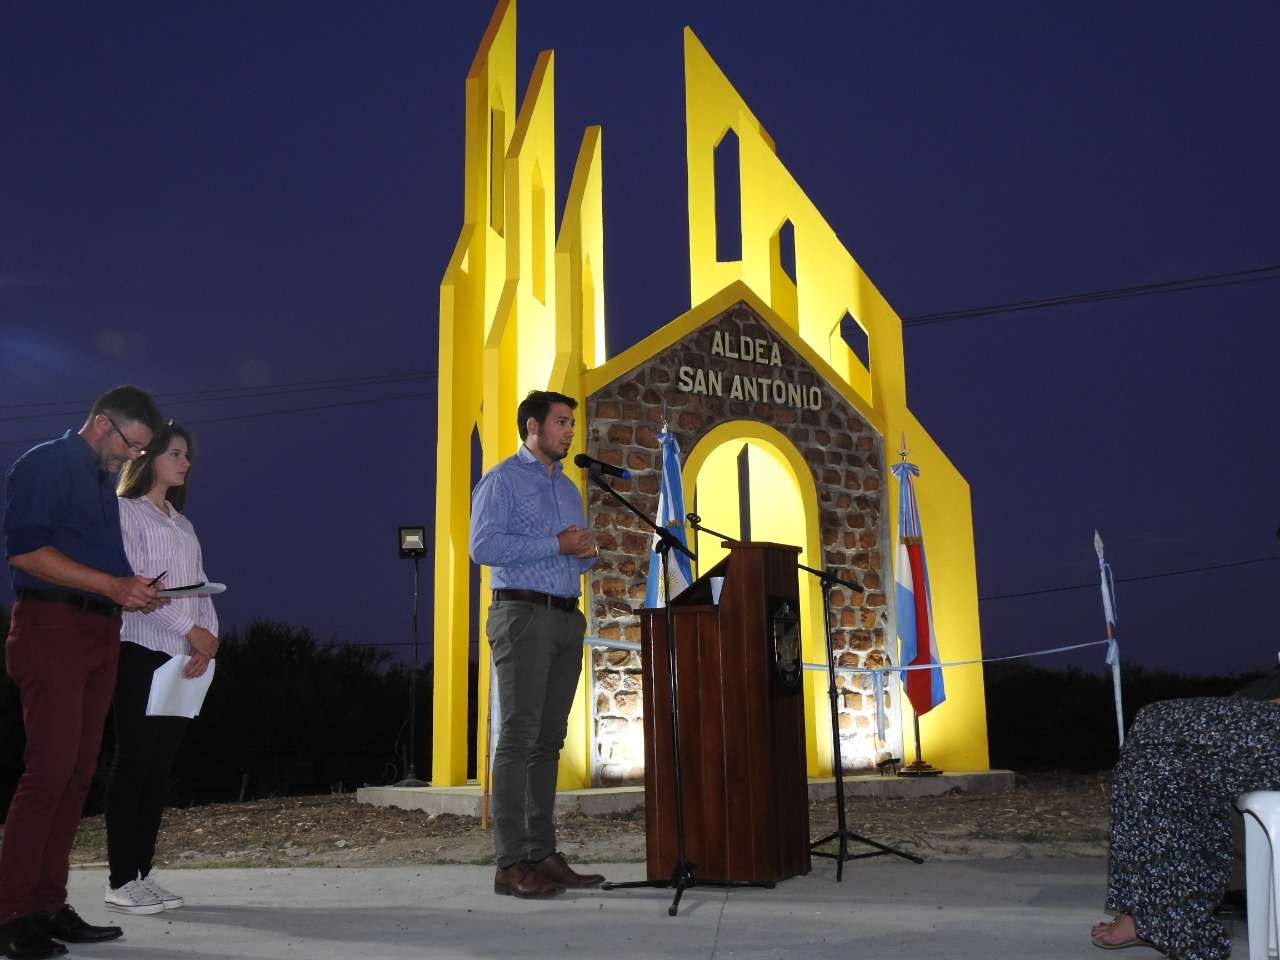 Aldea San Antonio inauguró la nueva imagen de su portal y el sistema de iluminación 